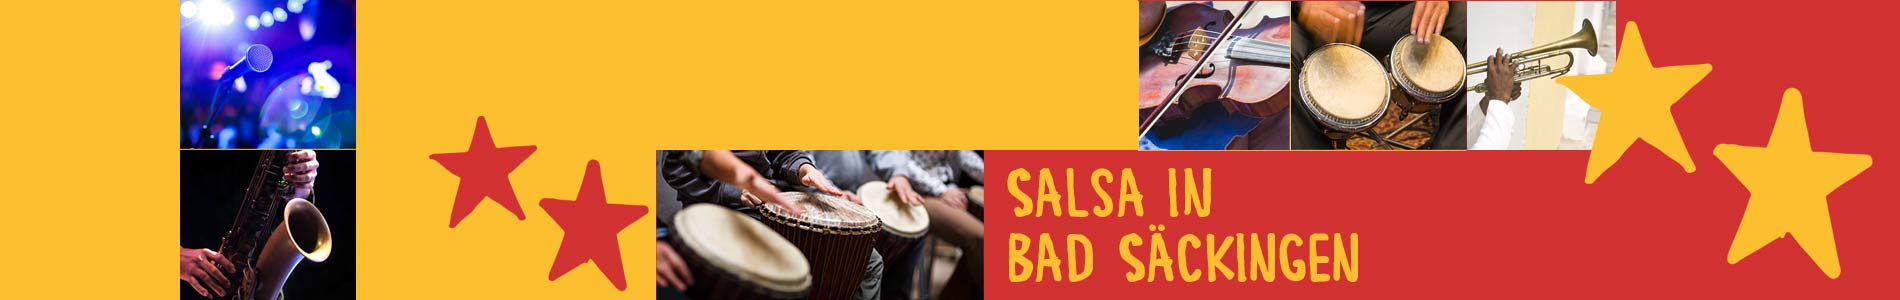 Salsa in Bad Säckingen – Salsa lernen und tanzen, Tanzkurse, Partys, Veranstaltungen